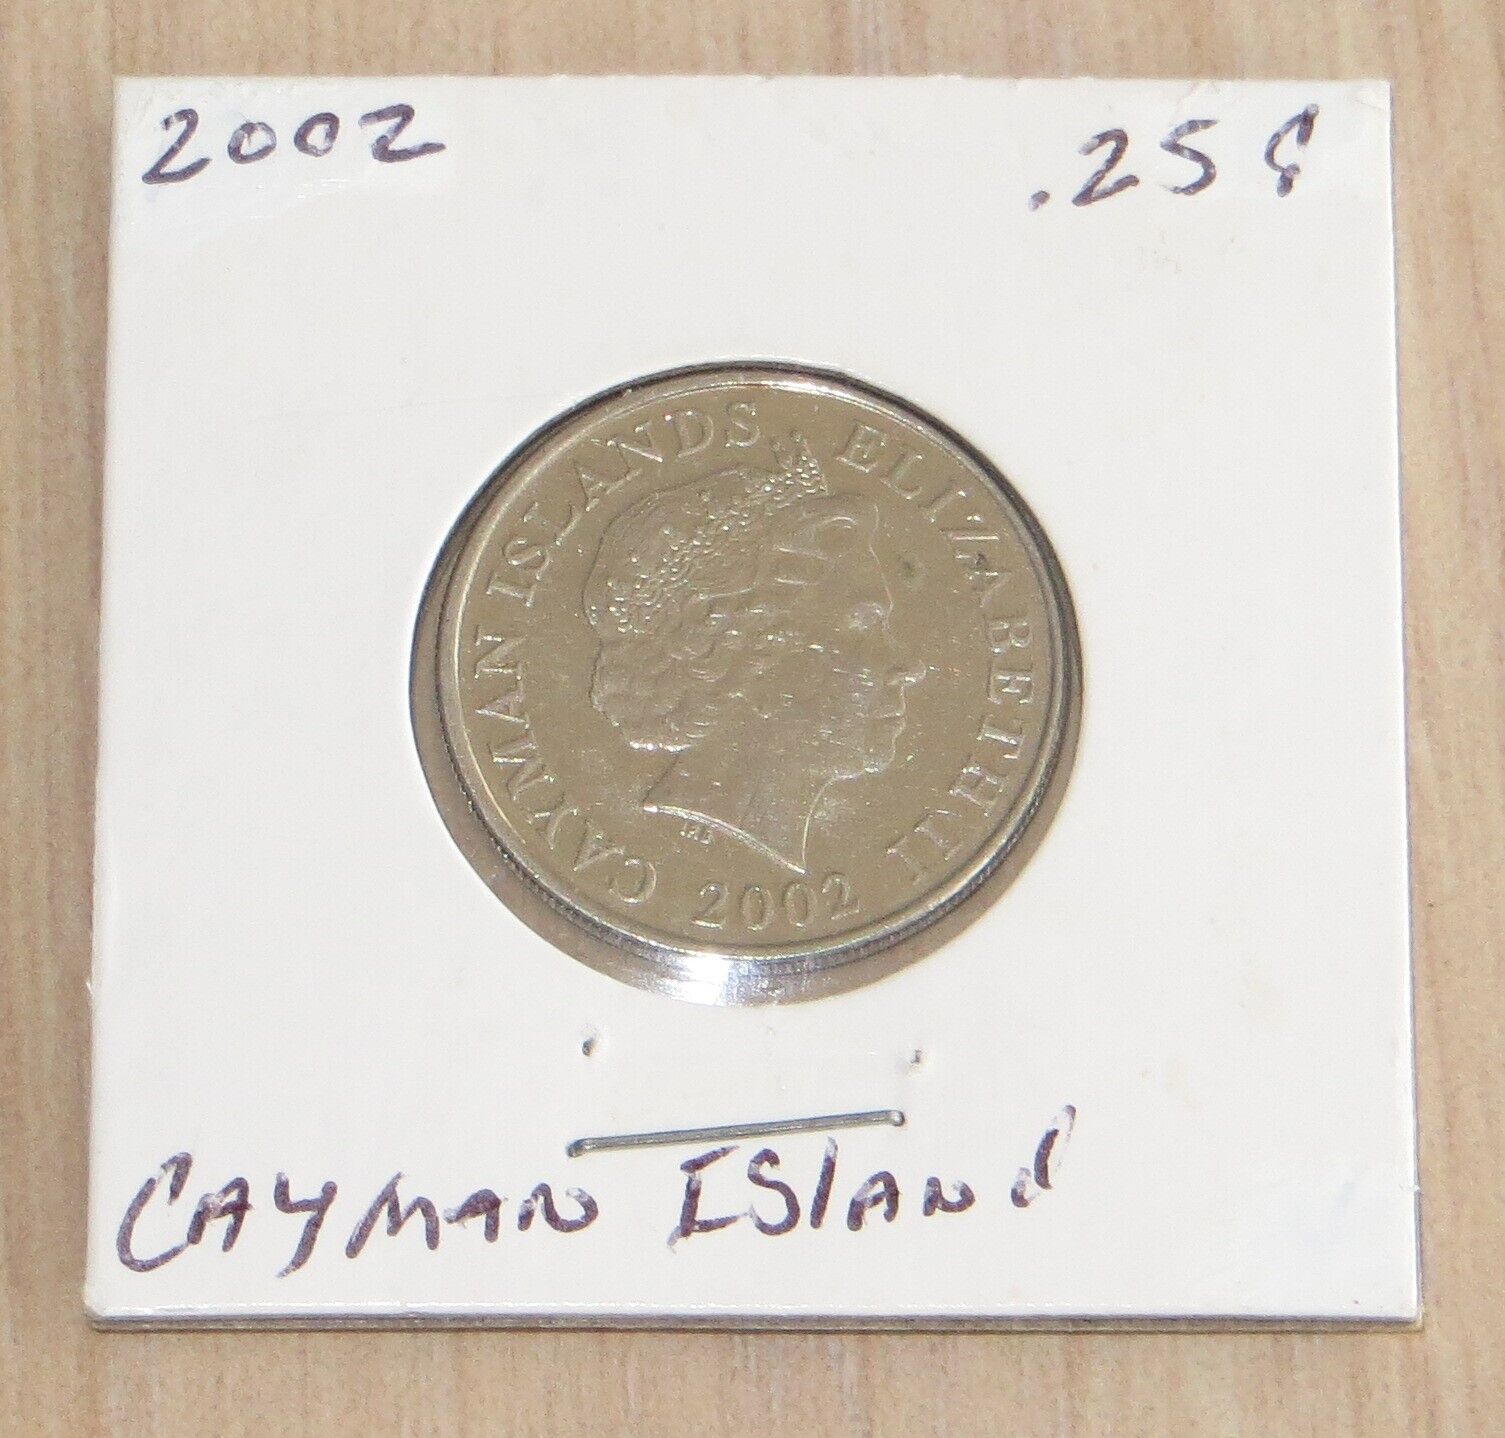 Cayman Island 2002 .25 Cent 3p9 Nice Coin